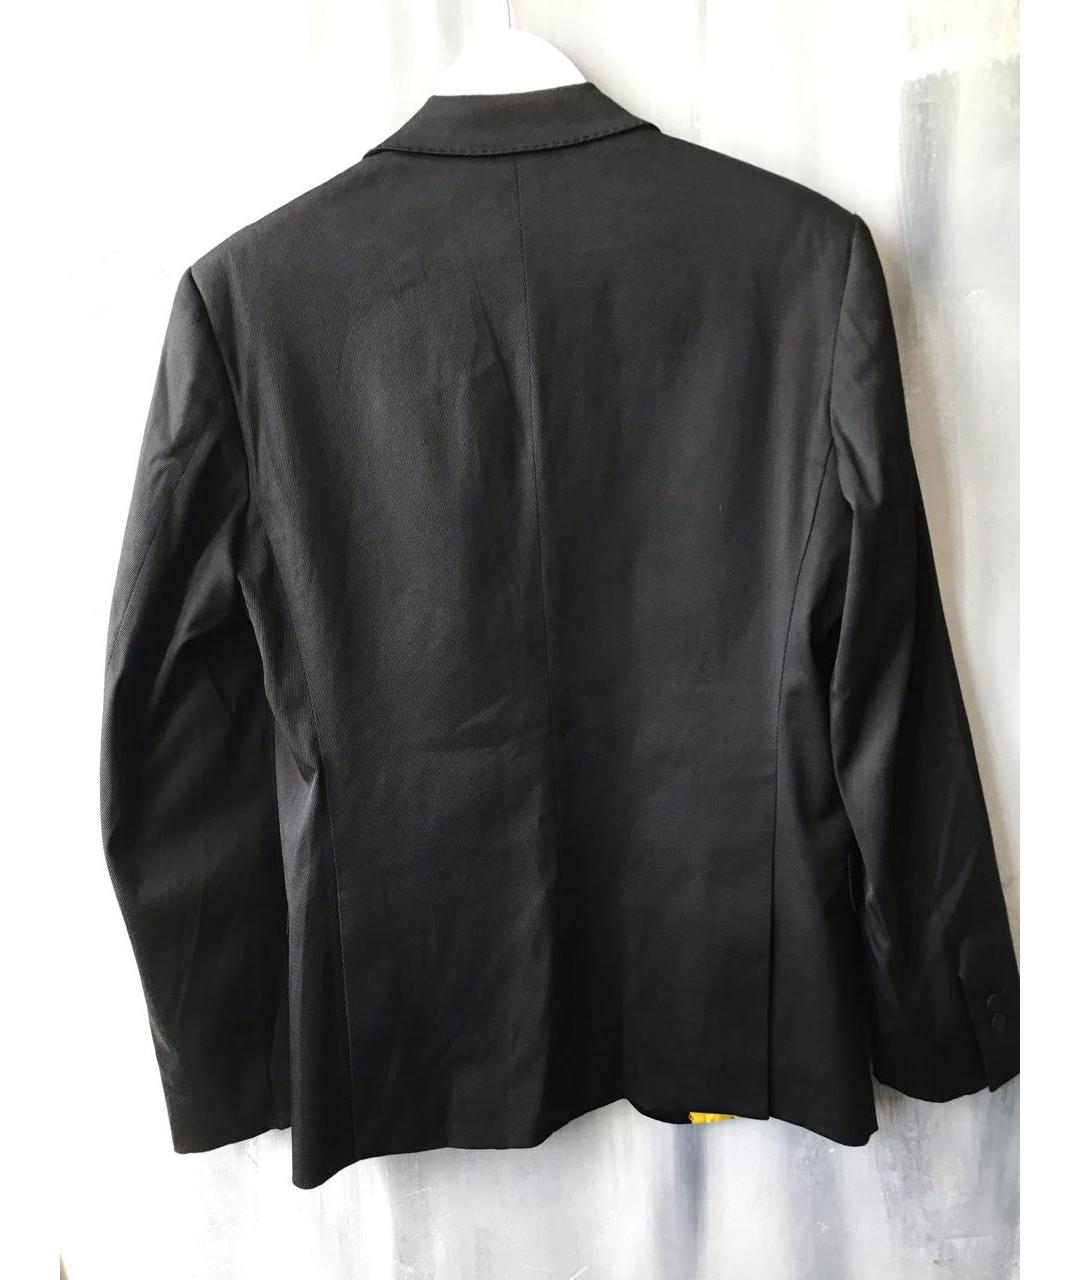 DSQUARED2 Черный хлопковый жакет/пиджак, фото 2